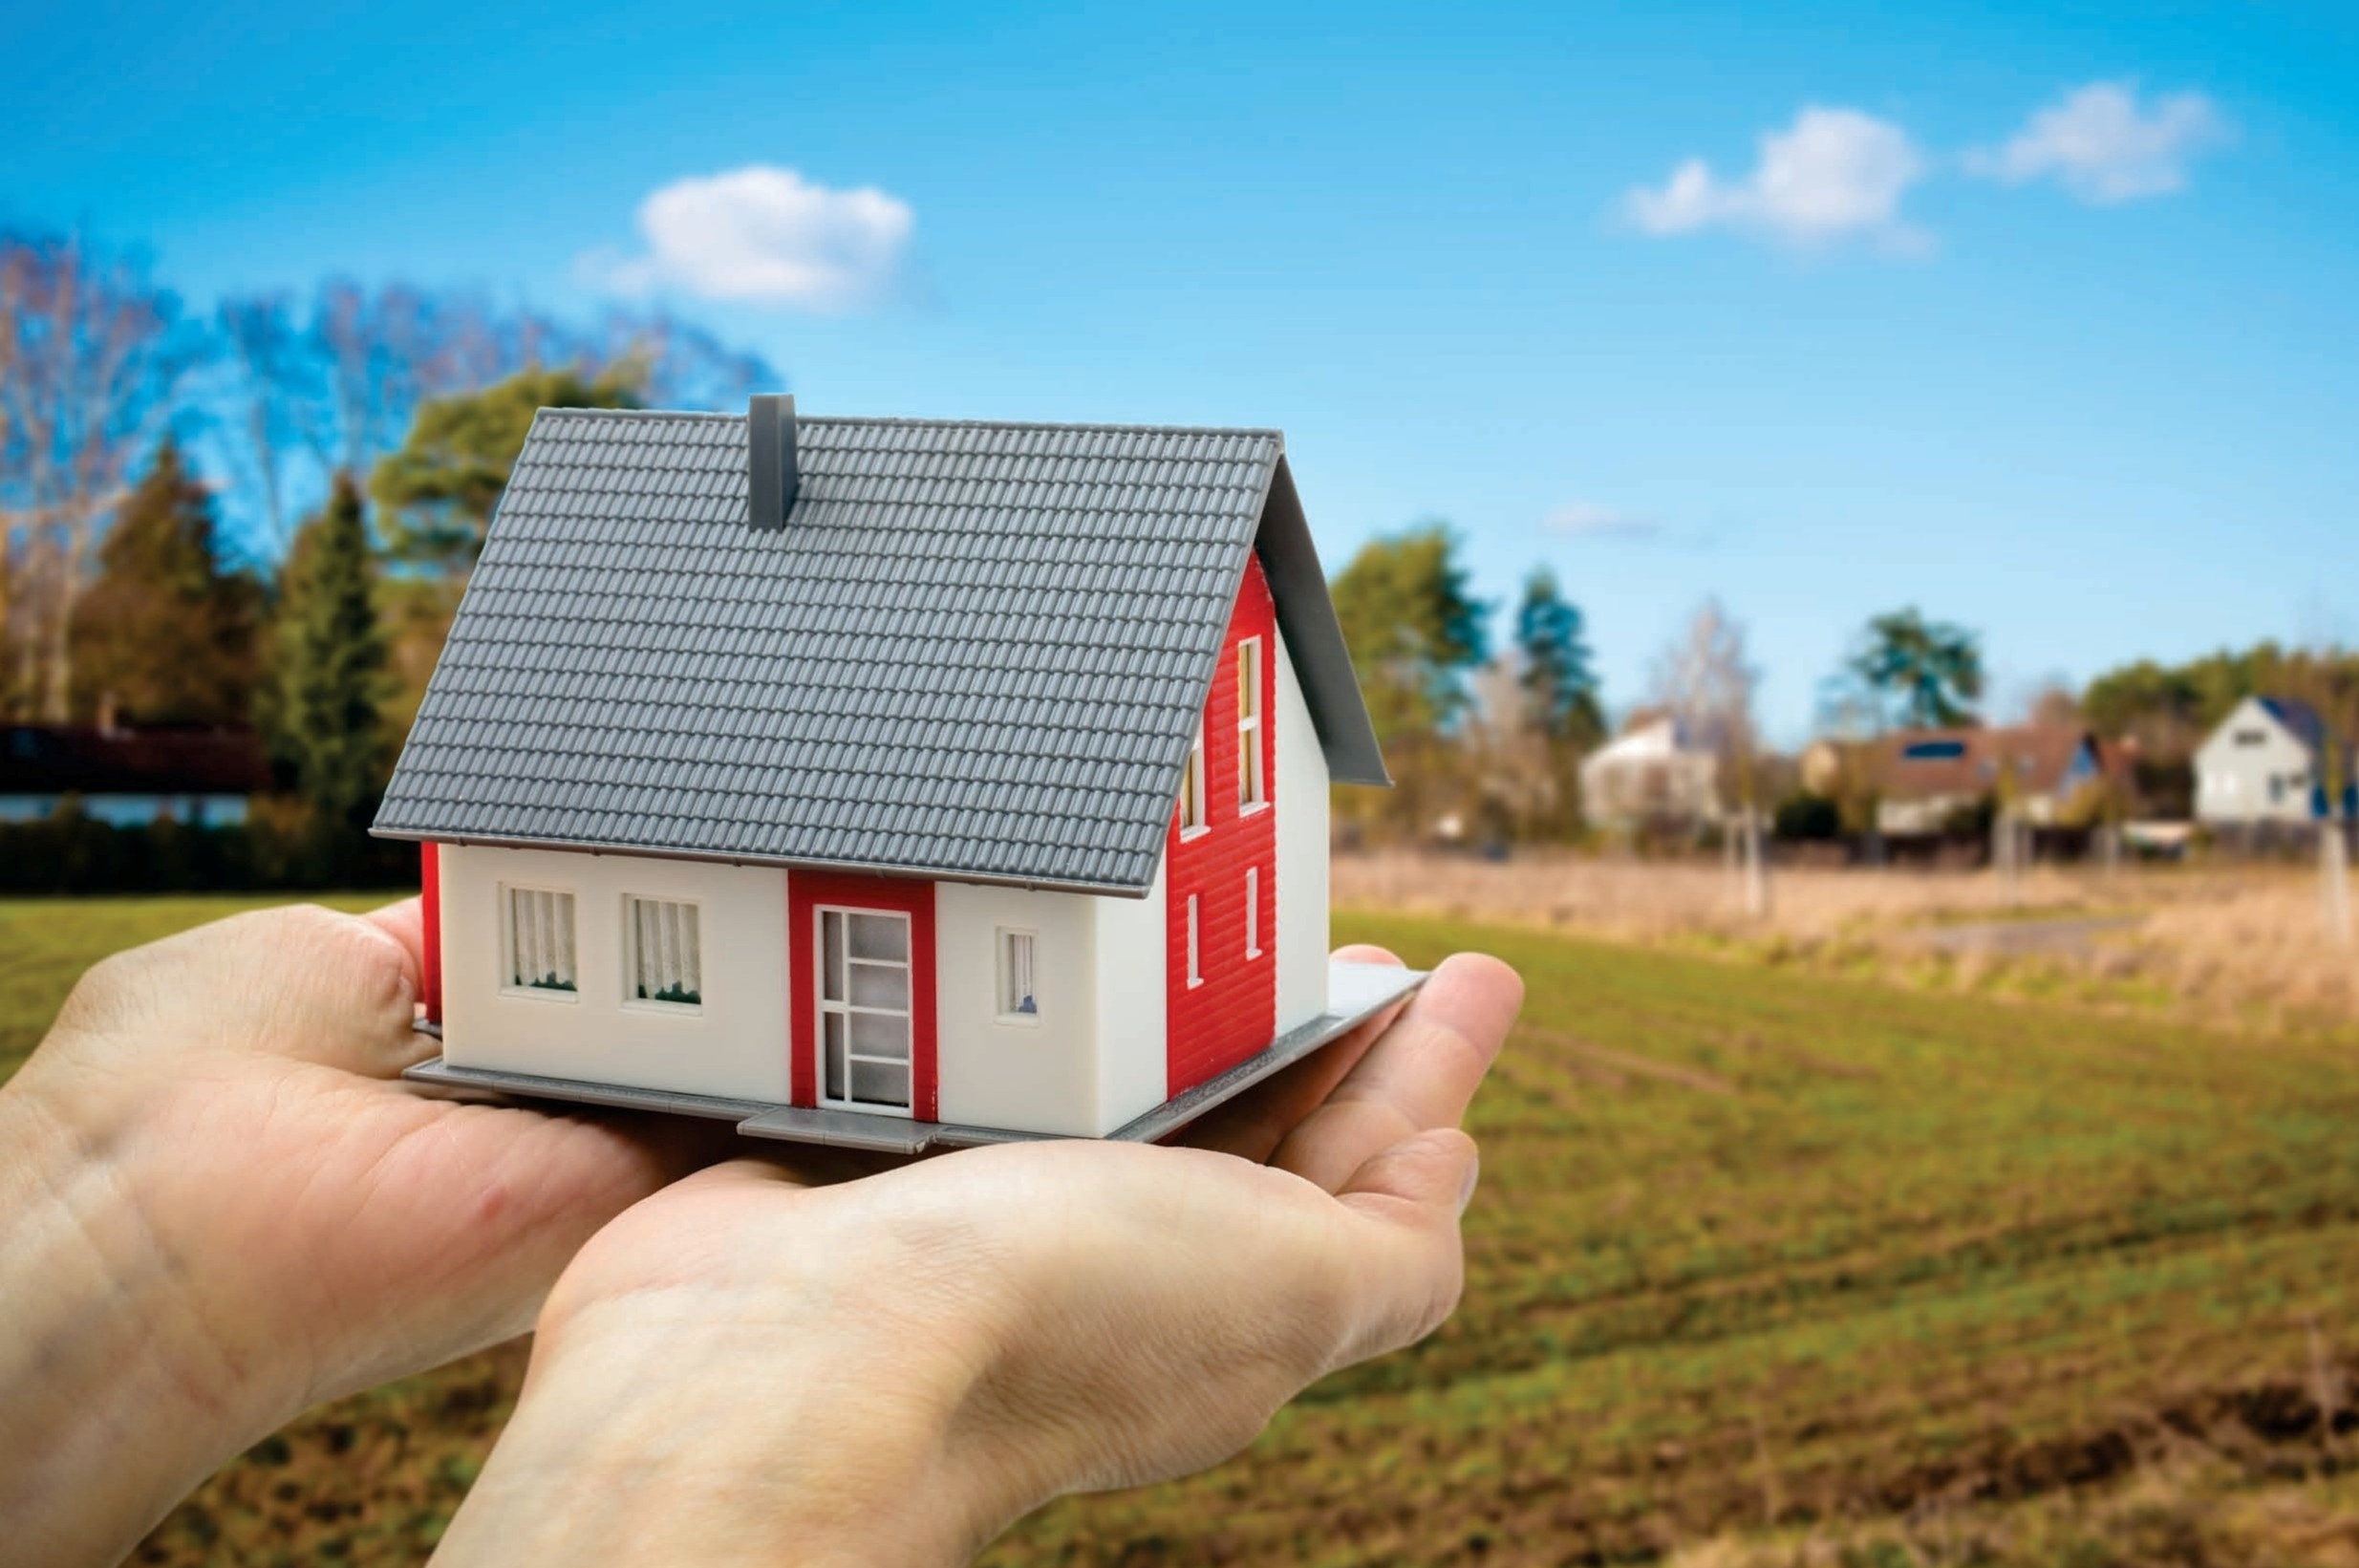 За год 700 томских семей получили жилье благодаря сельской ипотеке и господдержке